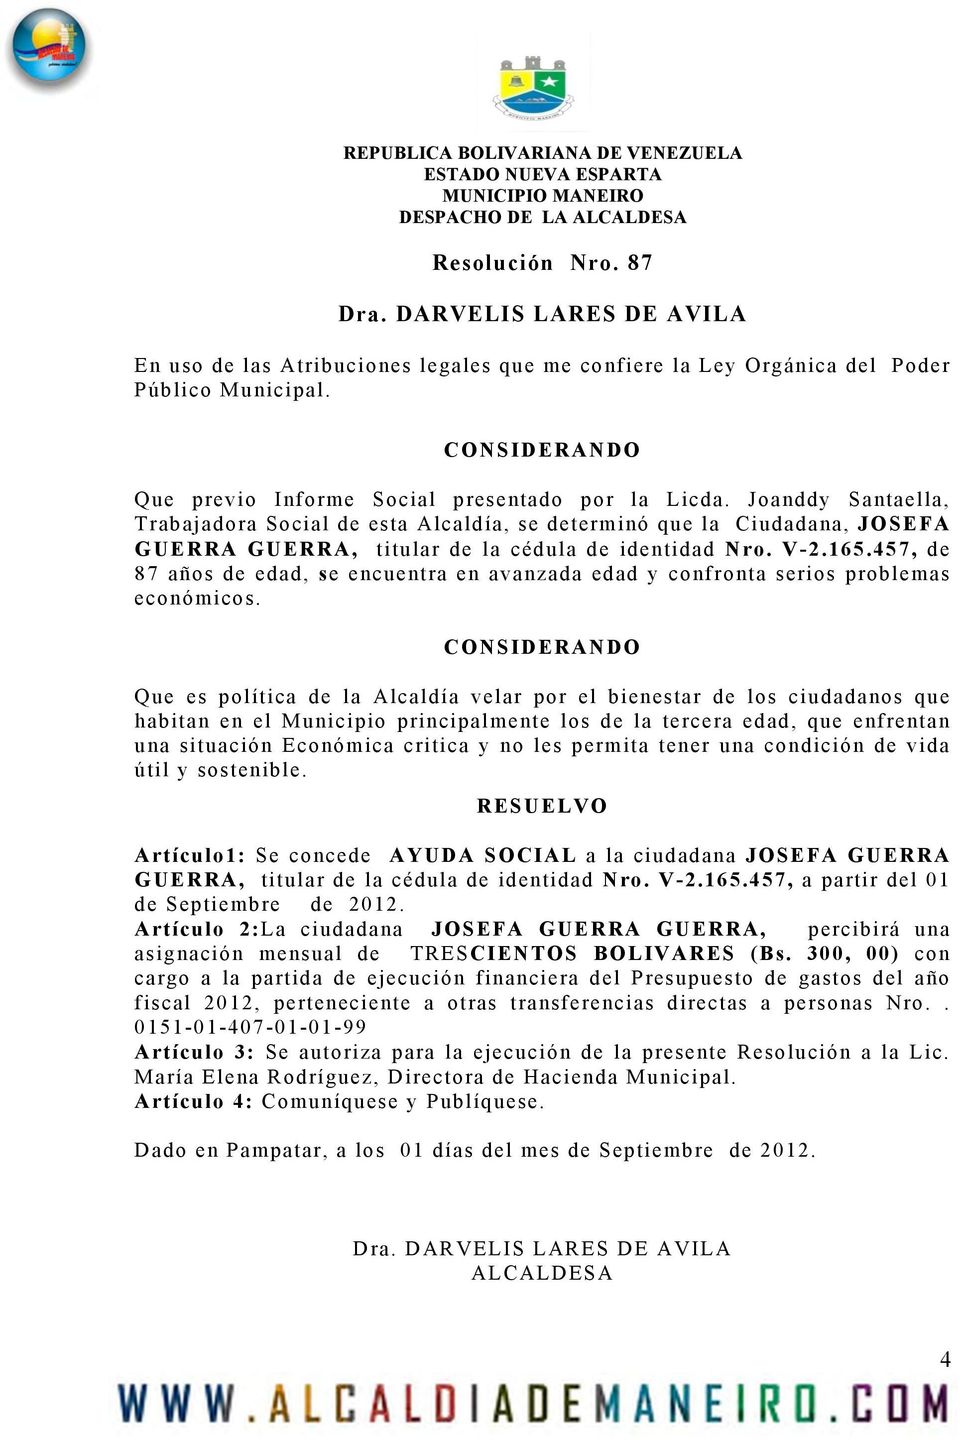 Joanddy Santaella, Trabajadora Social de esta Alcaldía, se determinó que la Ciudadana, JOSEFA GUERRA GUERRA, titular de la cédula de identidad Nro. V-2.165.